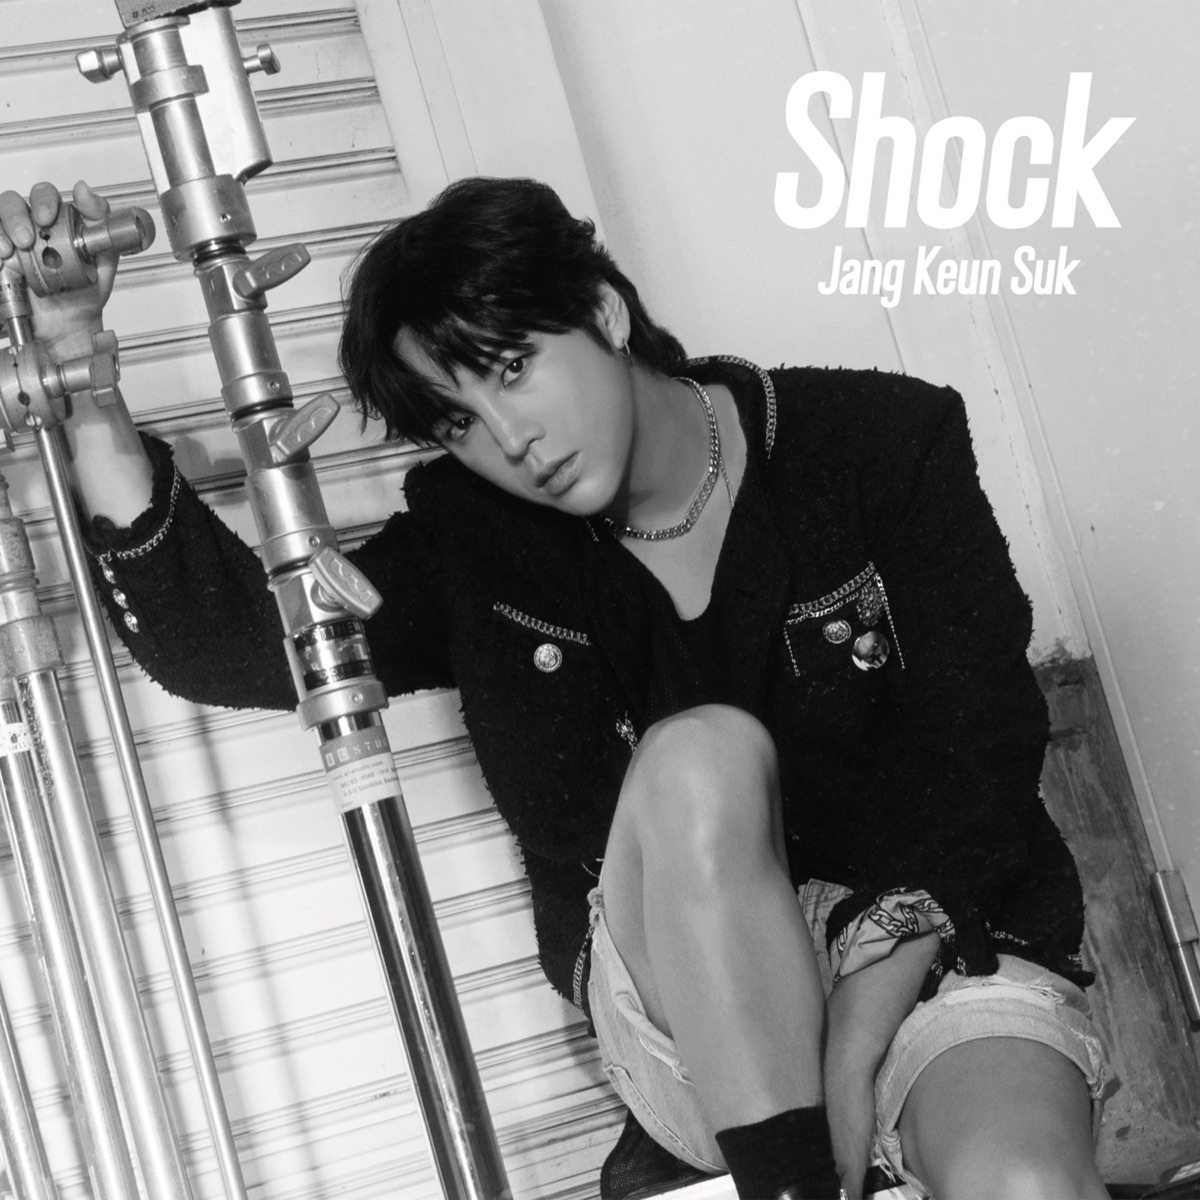 『チャン・グンソク - Movie Star』収録の『Shock』ジャケット